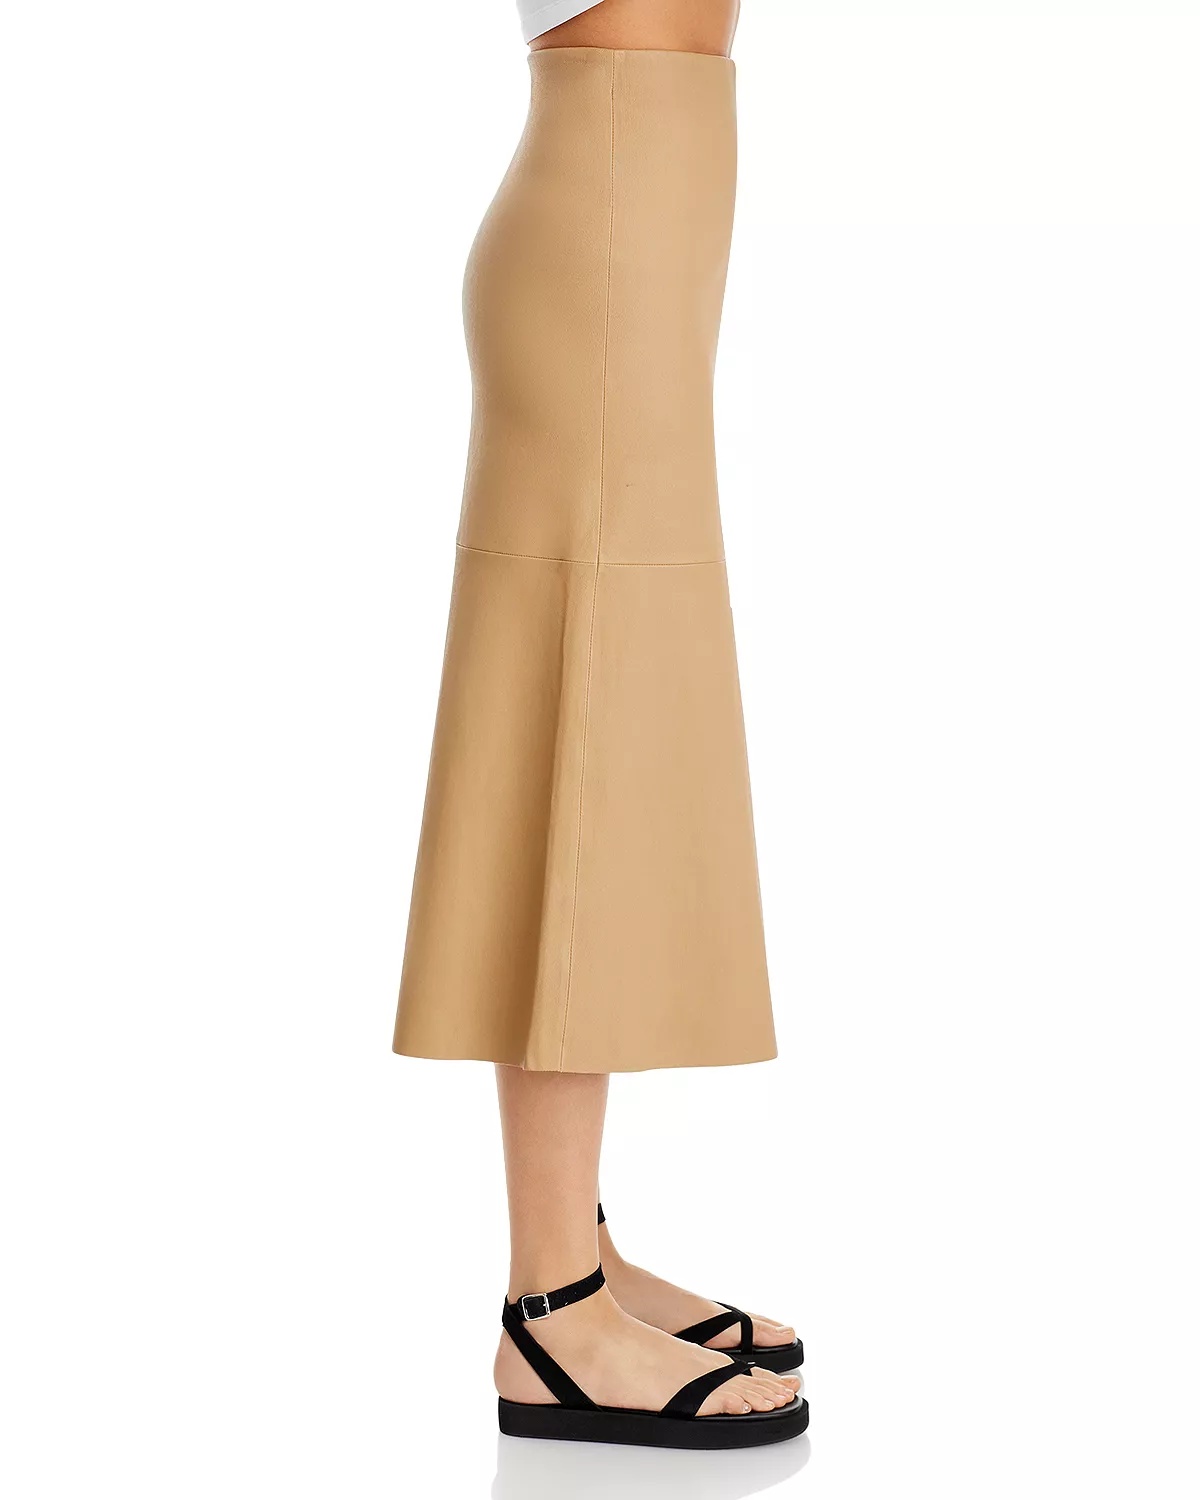 Simoas Leather Skirt - 4